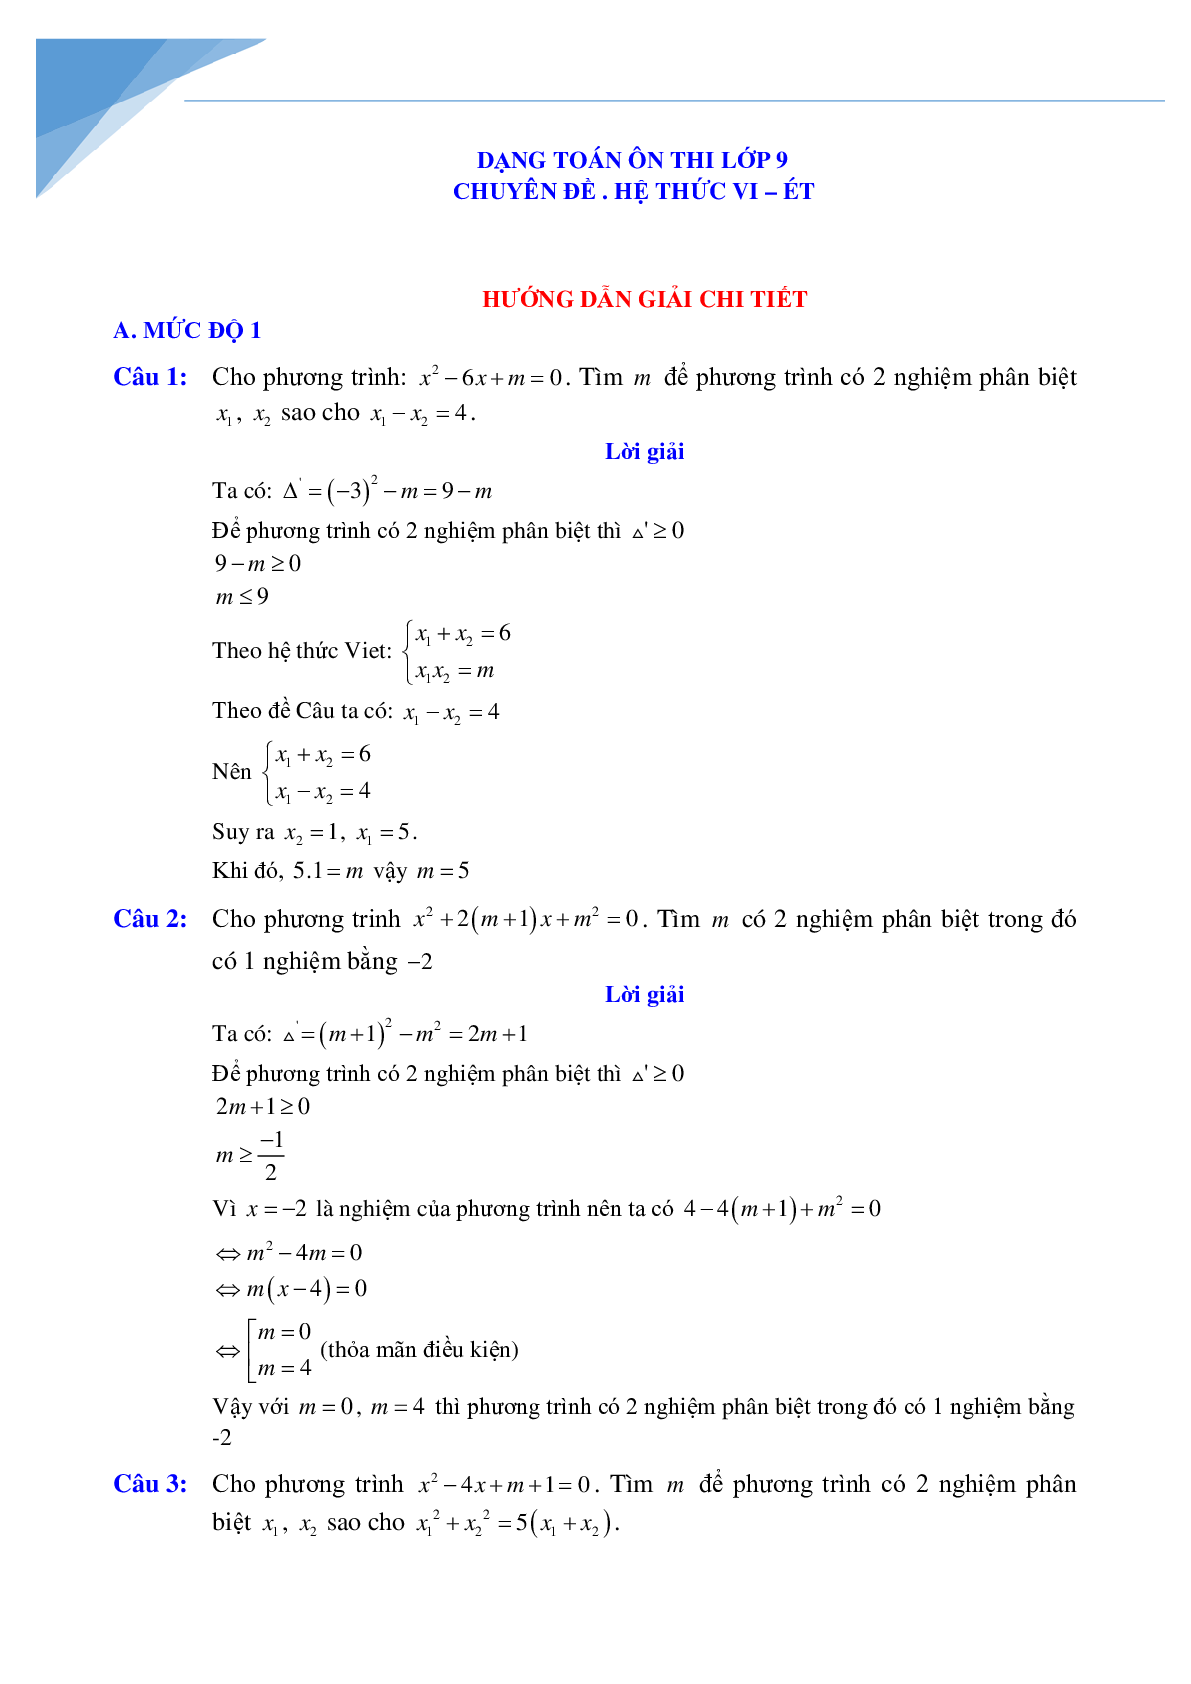 Chuyên đề vi-et luyện thi vào lớp 10 môn toán (trang 4)